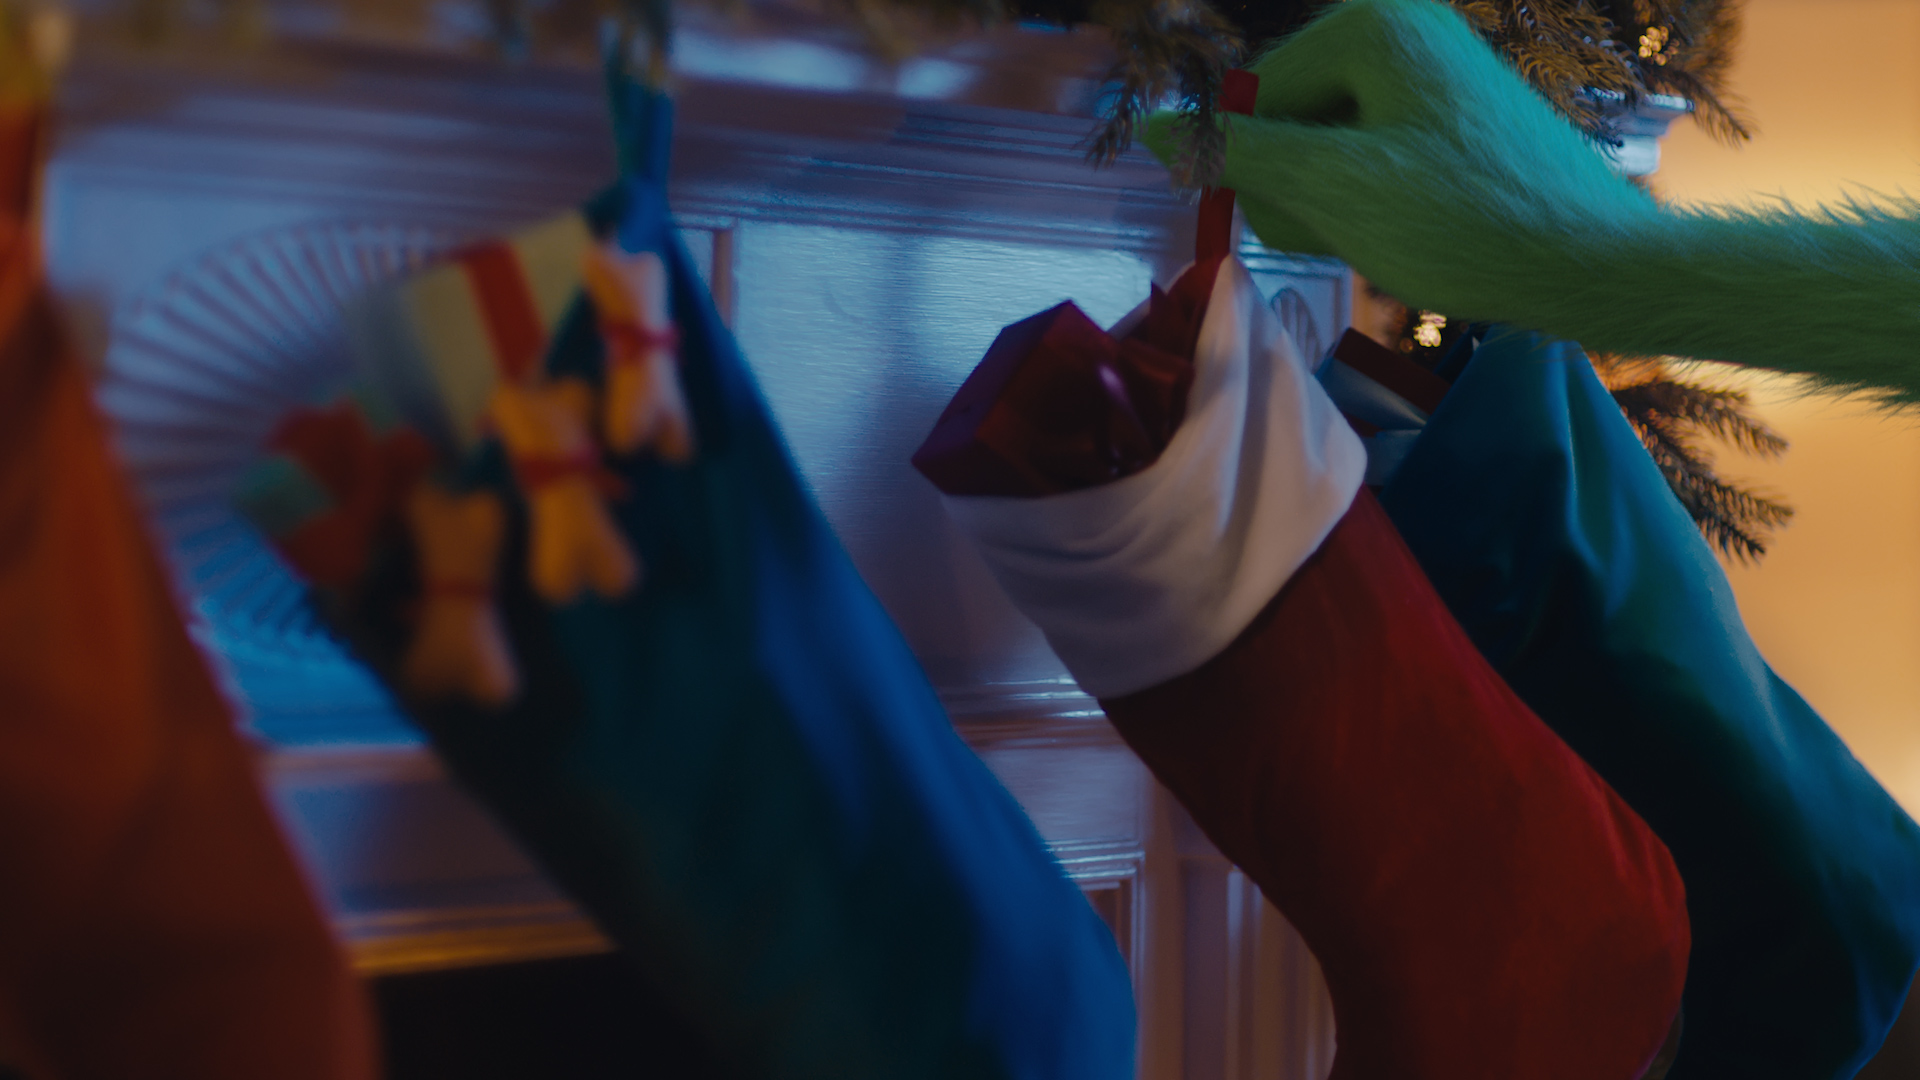 stocking grab.jpg